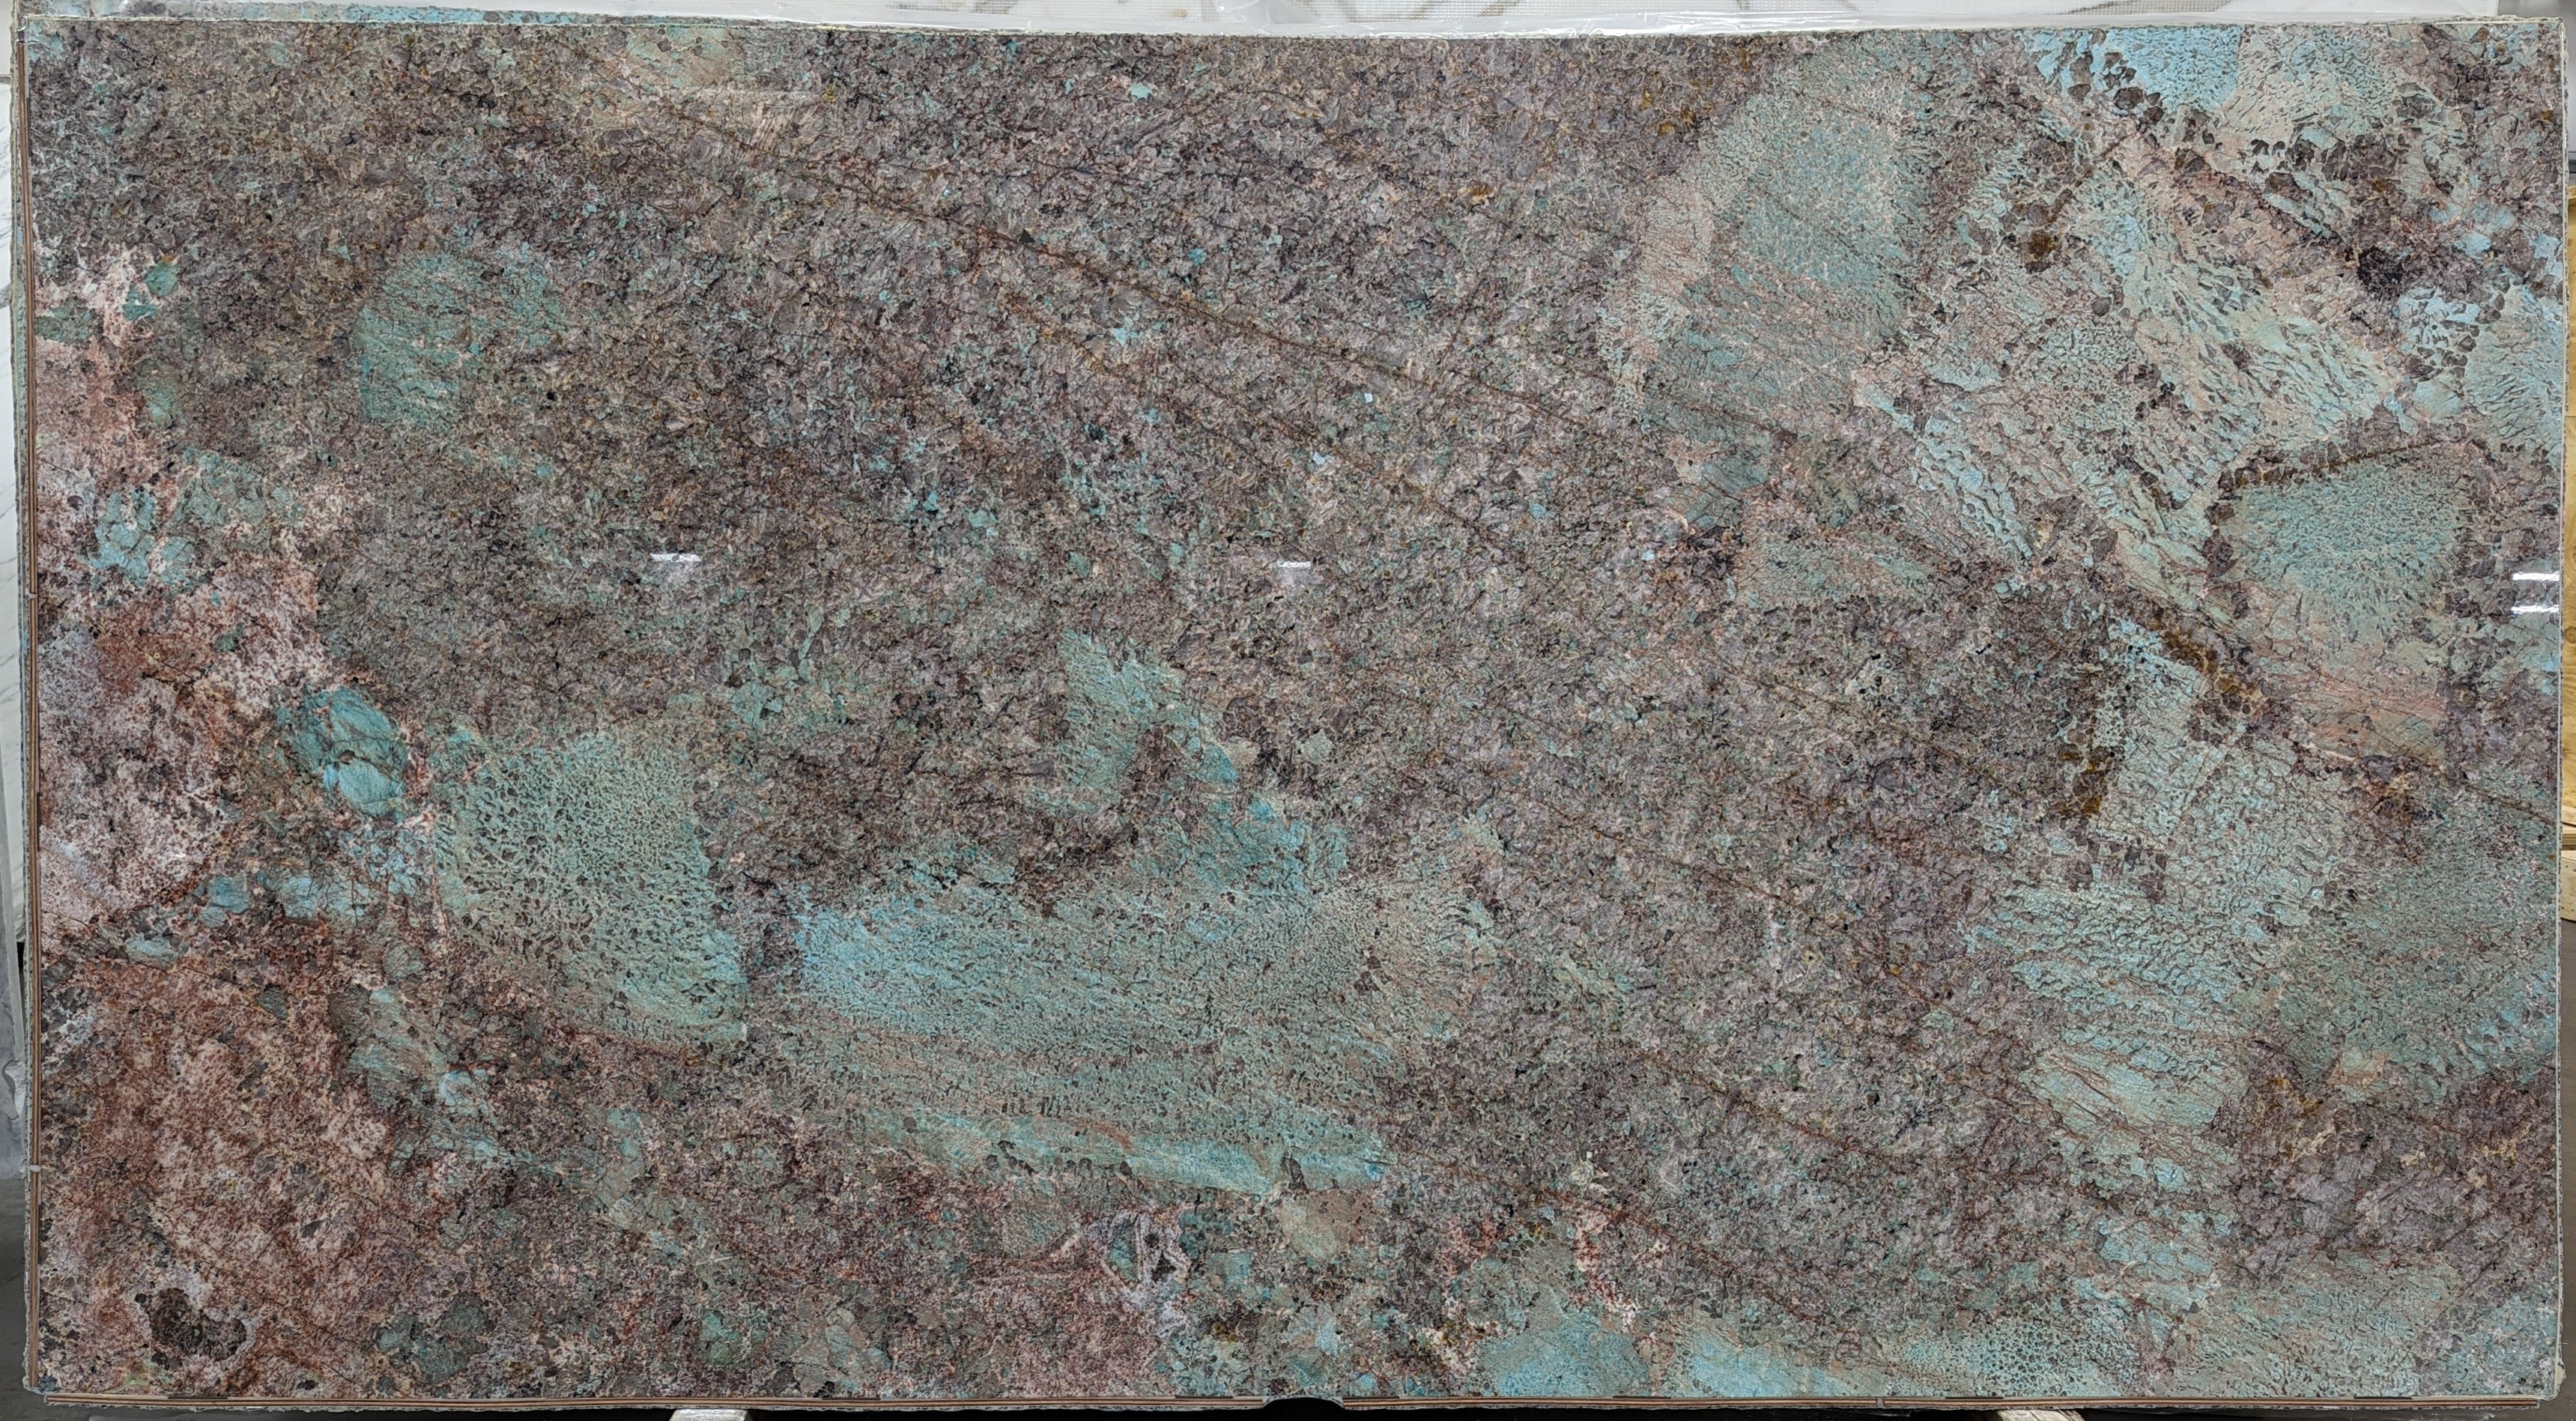  Amazonite Quartzite Slab 3/4  Polished Stone - 20921#33 -  64X119 